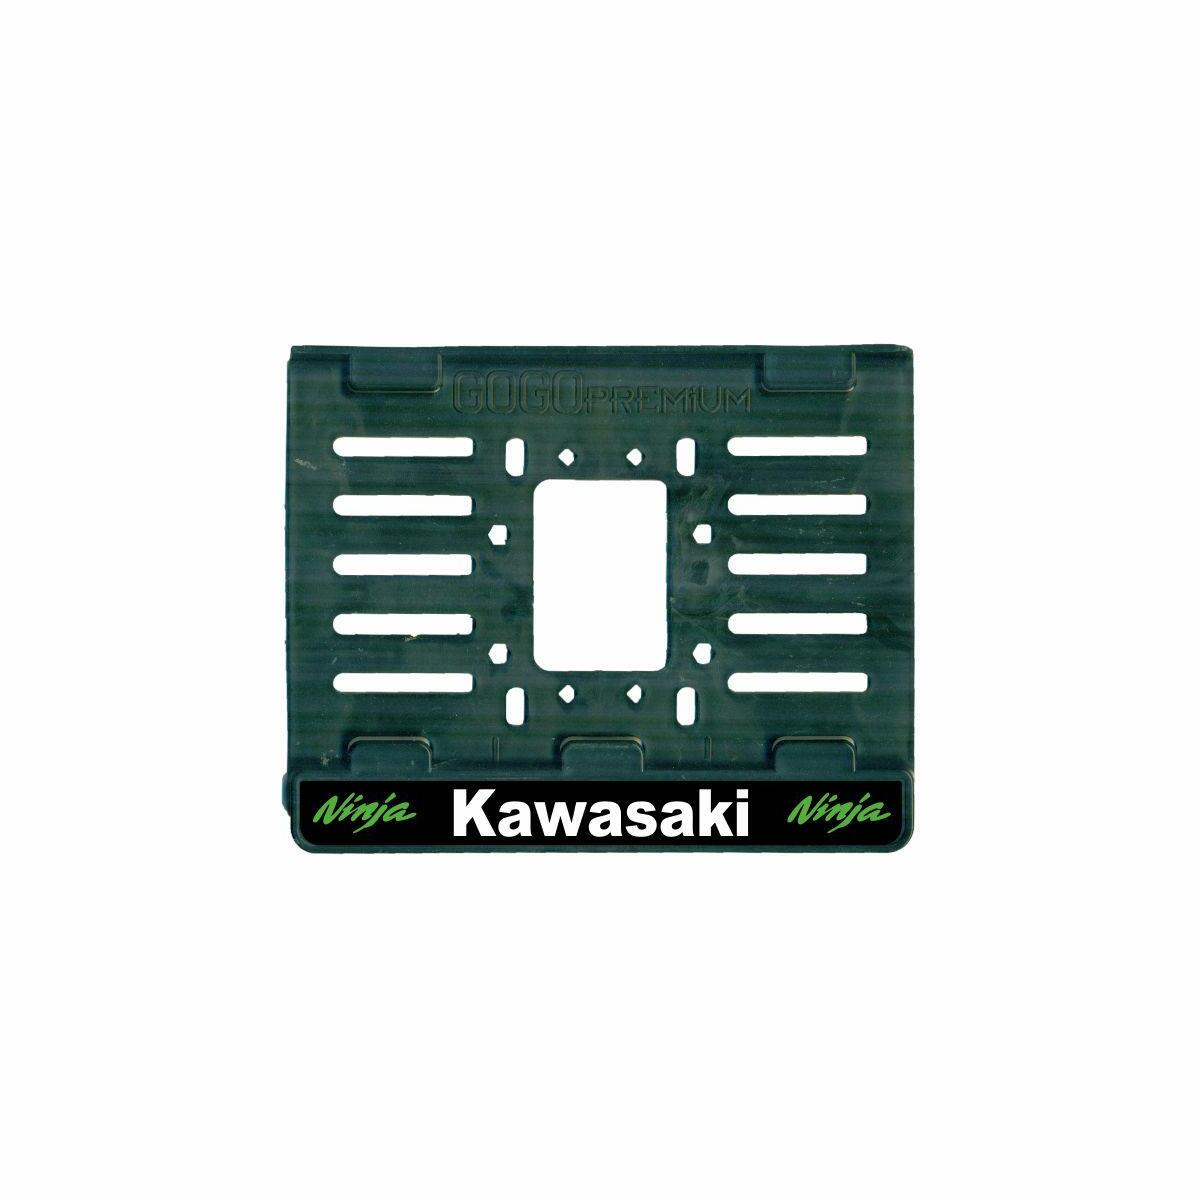 Sevenkardeşler Kawasaki I App Plastik (12X18 Cm) Kırılmaz Plakalık